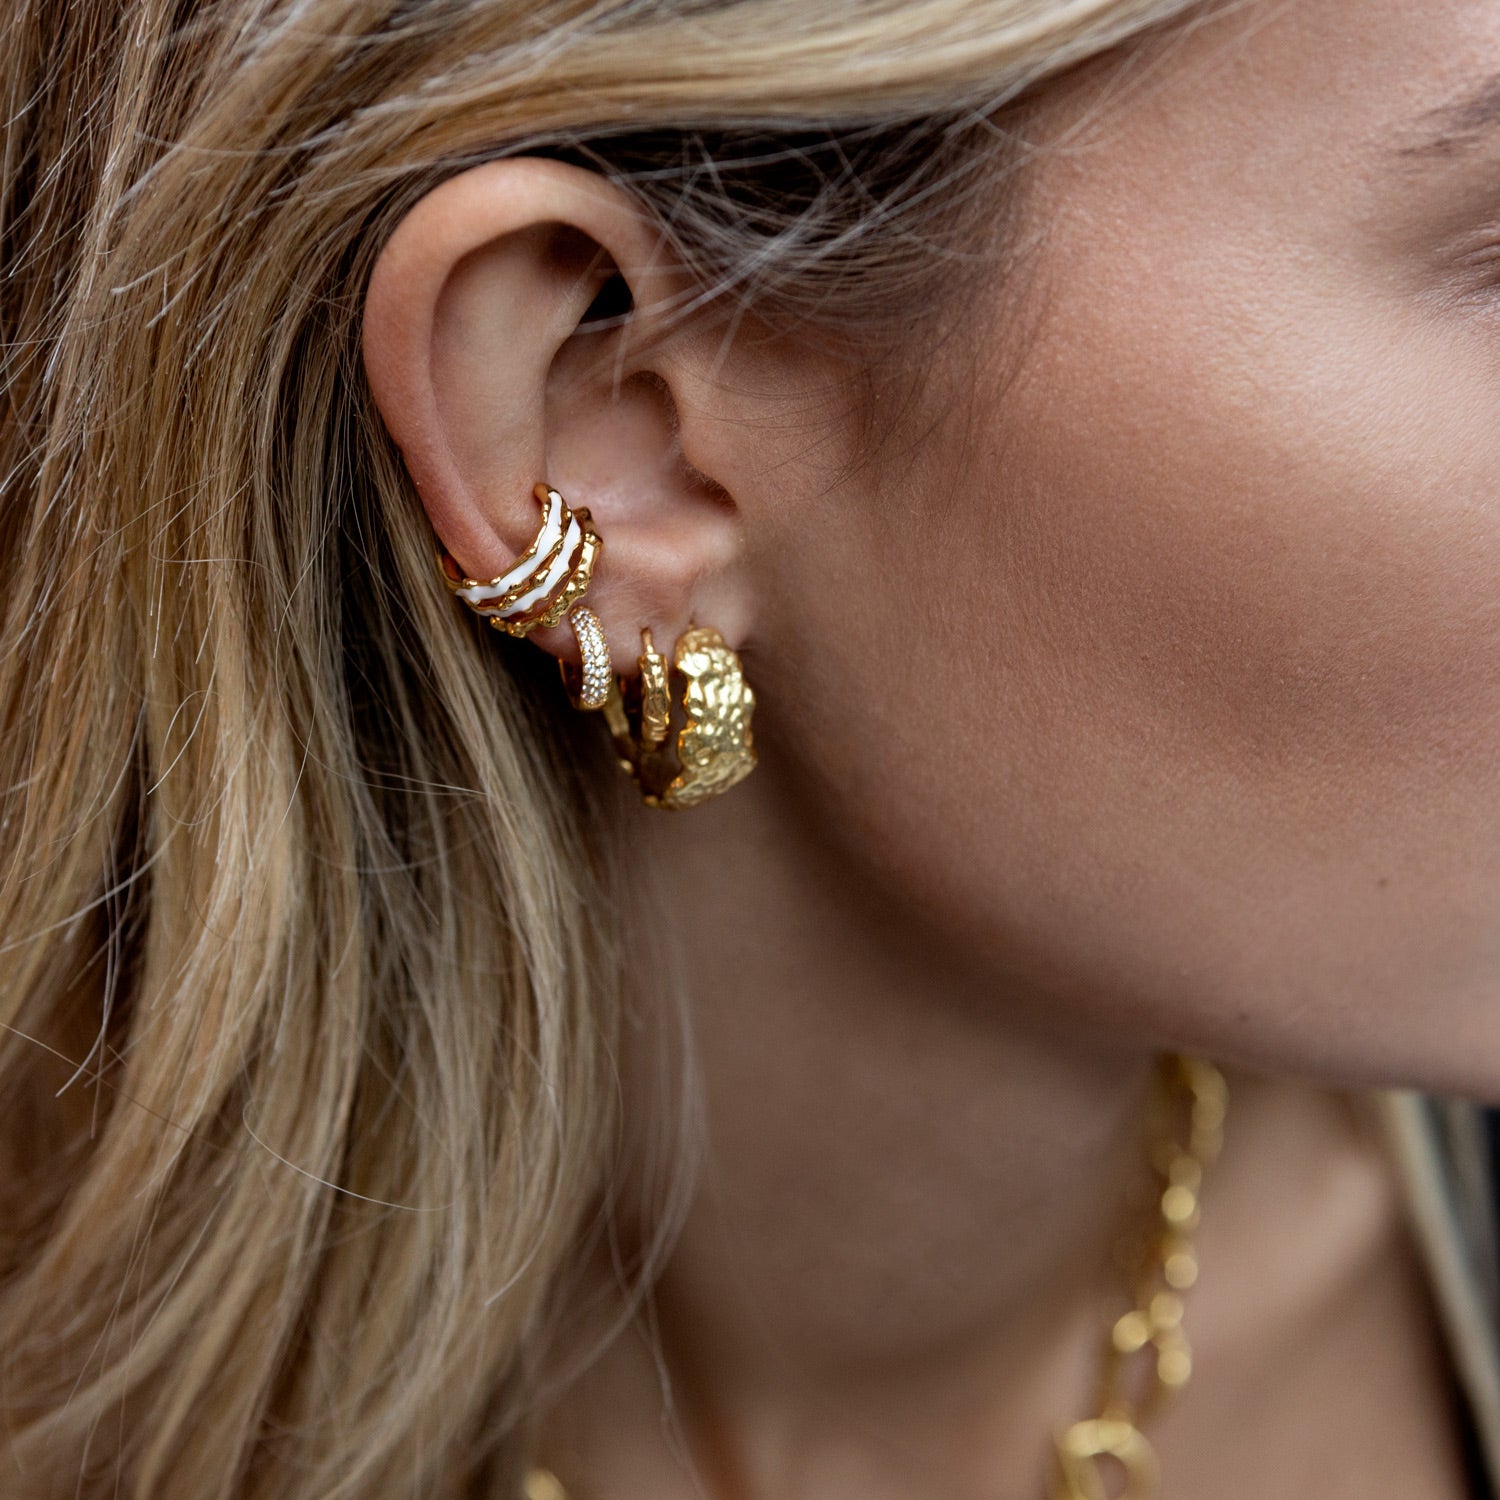 Triple Cuff Earring - Gold